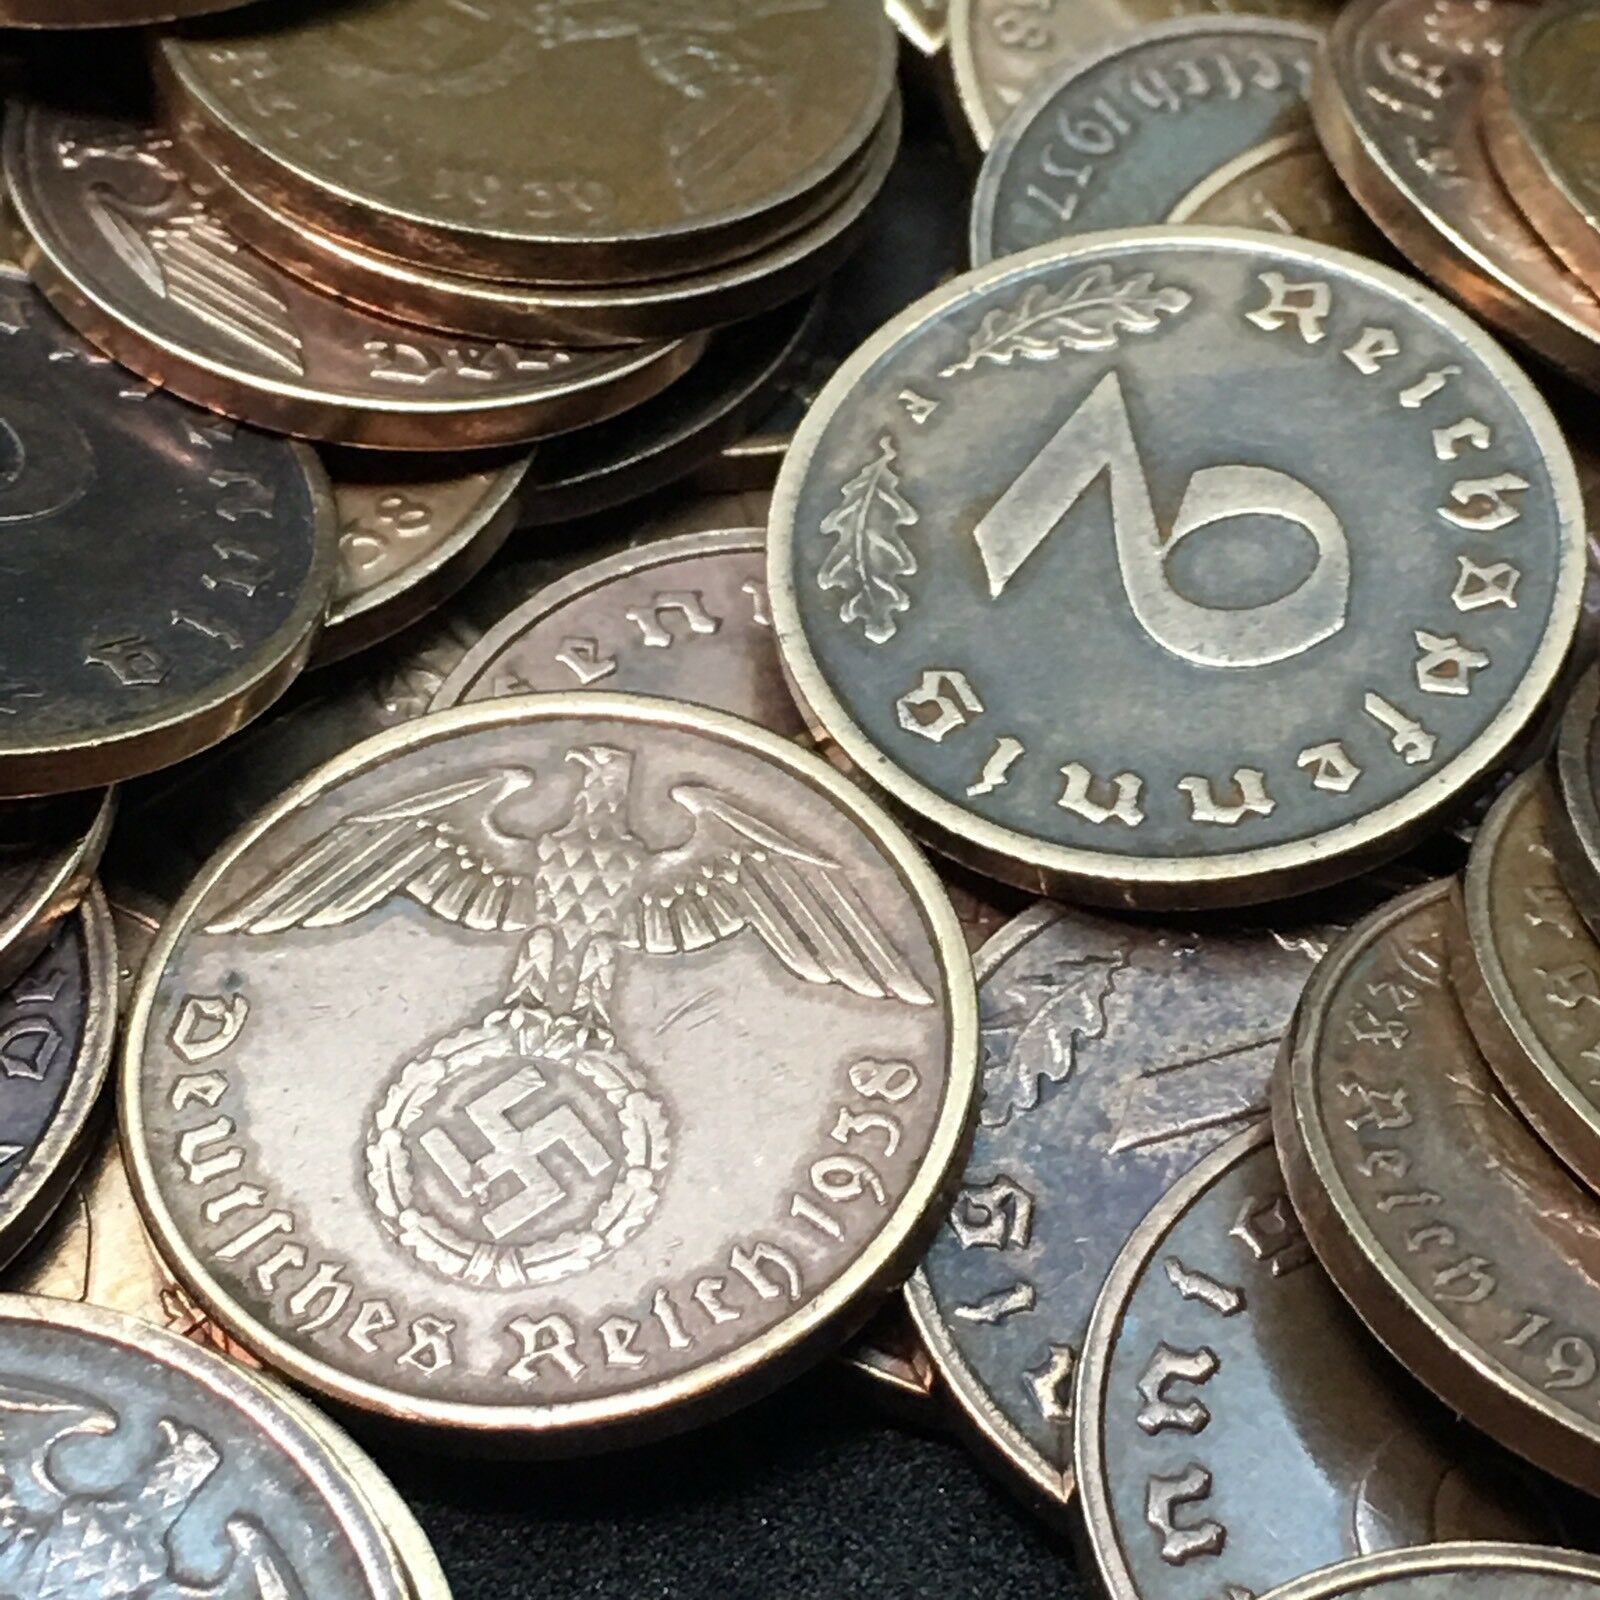 Rare World War 2 Germany Bronze 2 Rp Reichspfennig  Coin Buy 3 Get 1 Free